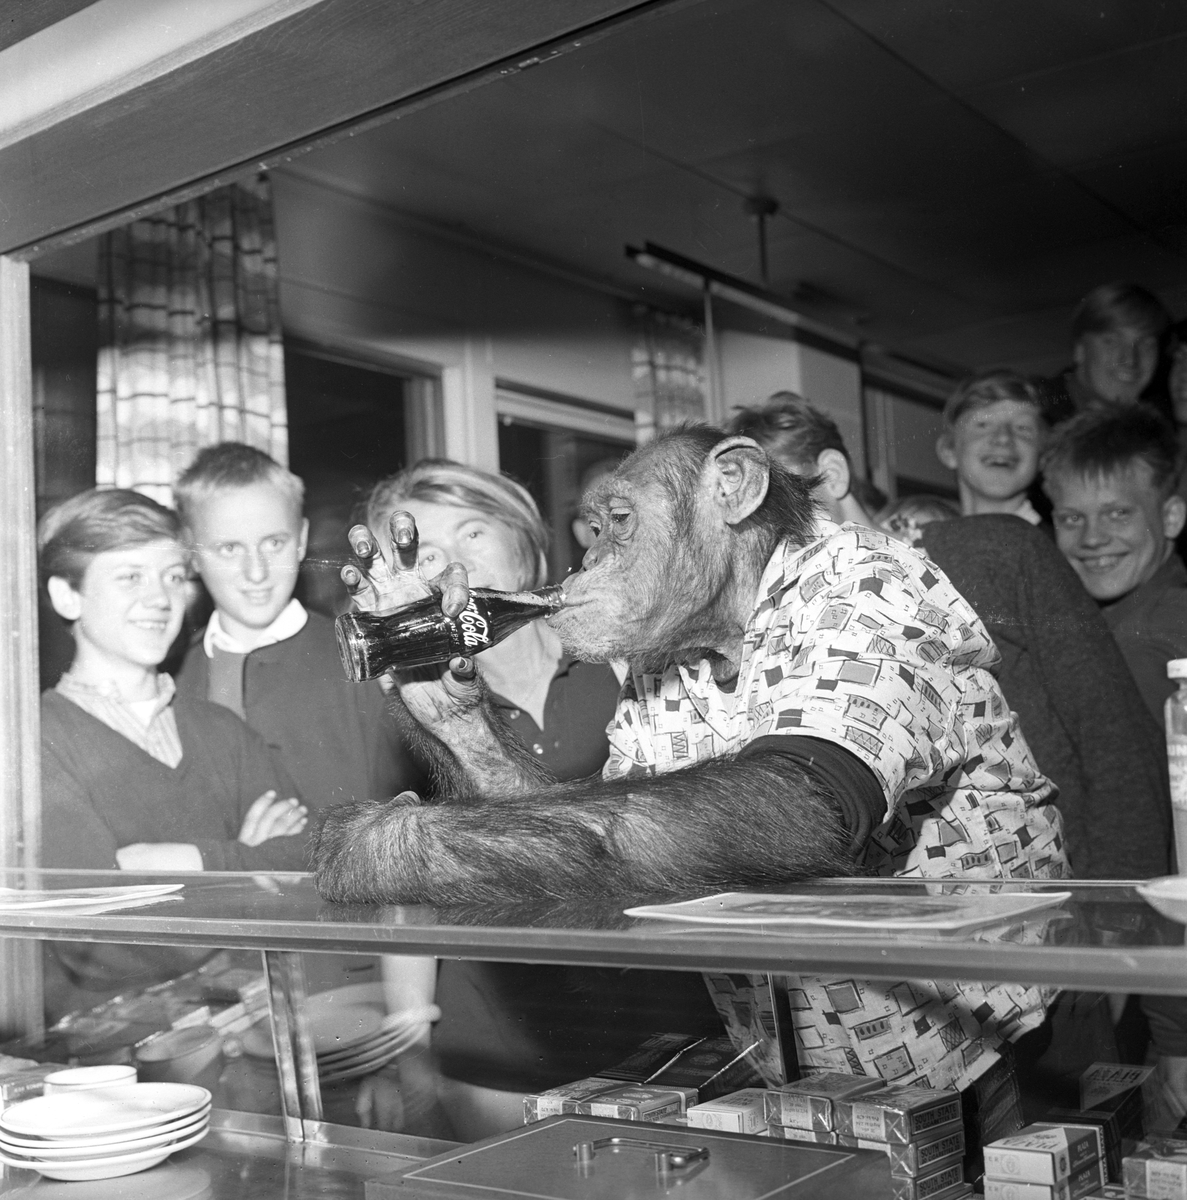 Apekatt drikker Cola i kantinen, på besøk i Dagbladet.
Fotografert 1965.